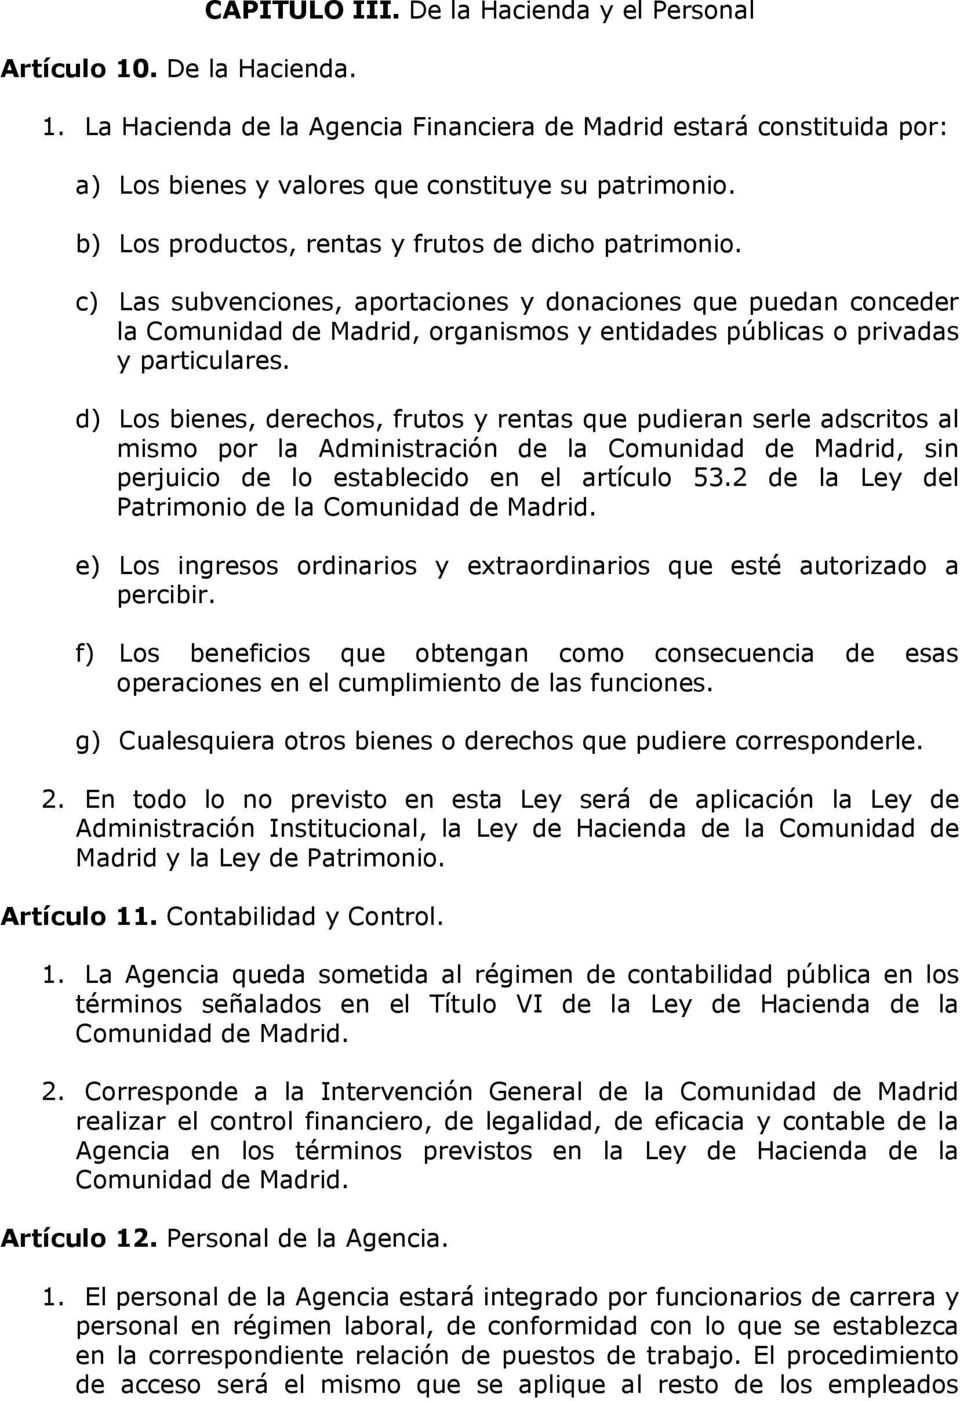 Los bienes, derechos, frutos y rentas que pudieran serle adscritos al mismo por la Administración de la Comunidad de Madrid, sin perjuicio de lo establecido en el artículo 53.